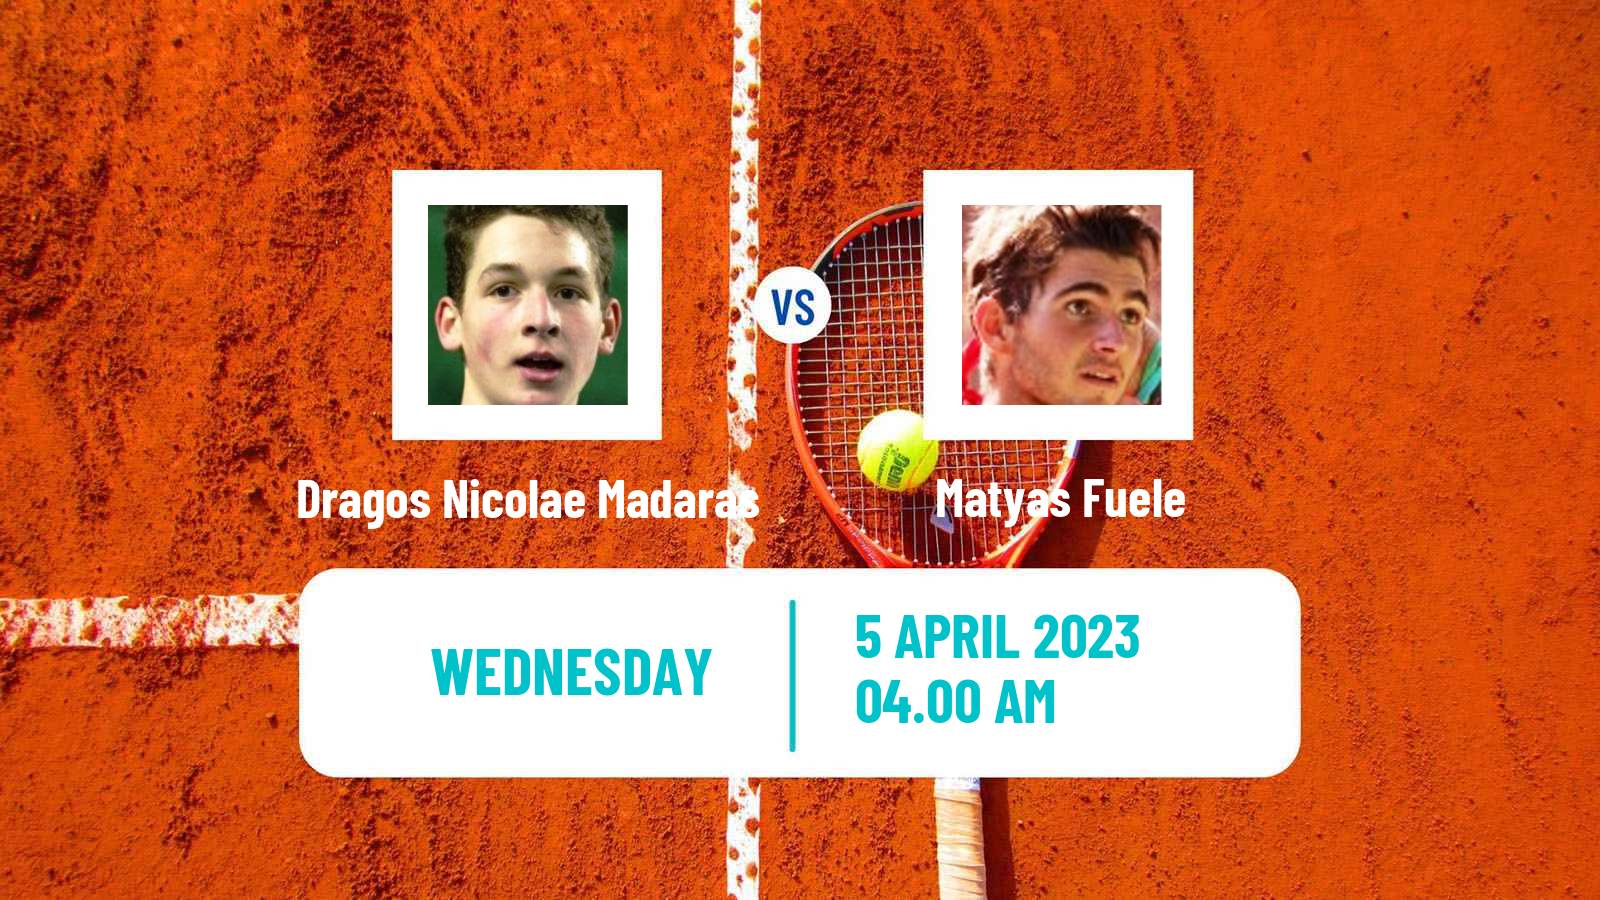 Tennis ITF Tournaments Dragos Nicolae Madaras - Matyas Fuele